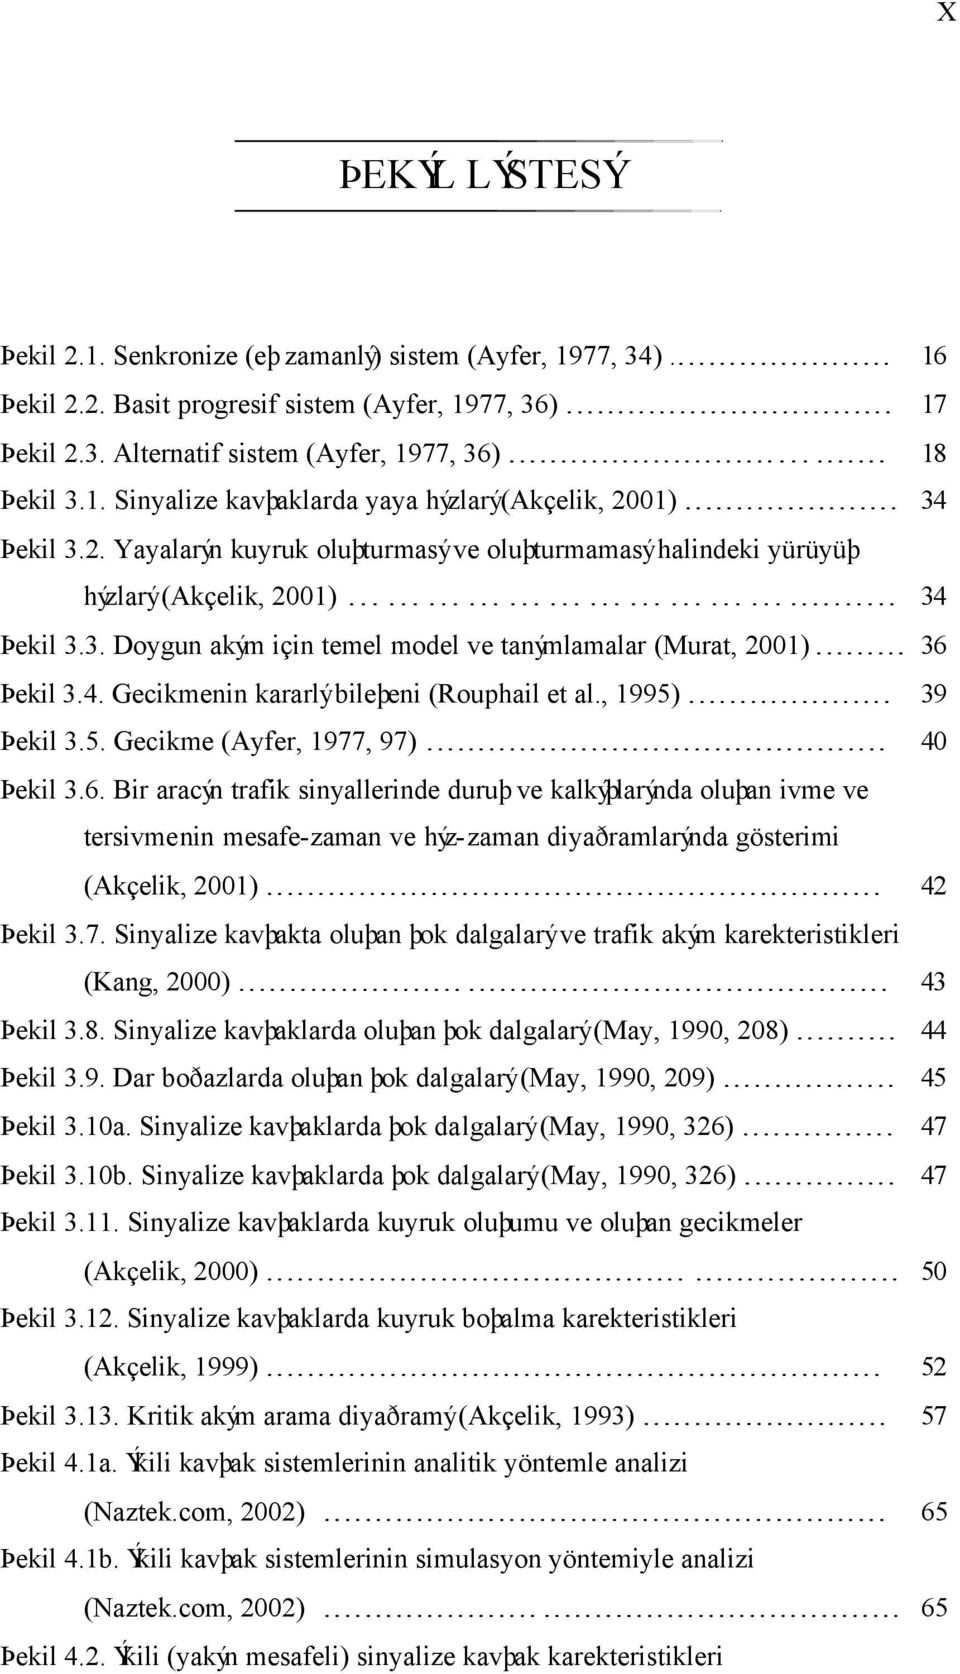 .. 36 Þekil 3.4. Gecikmenin kararlý bileþeni (Rouphail et al., 1995)... 39 Þekil 3.5. Gecikme (Ayfer, 1977, 97)... 40 Þekil 3.6. Bir aracýn trafik sinyallerinde duruþ ve kalkýþlarýnda oluþan ivme ve tersivmenin mesafe-zaman ve hýz-zaman diyaðramlarýnda gösterimi (Akçelik, 2001).